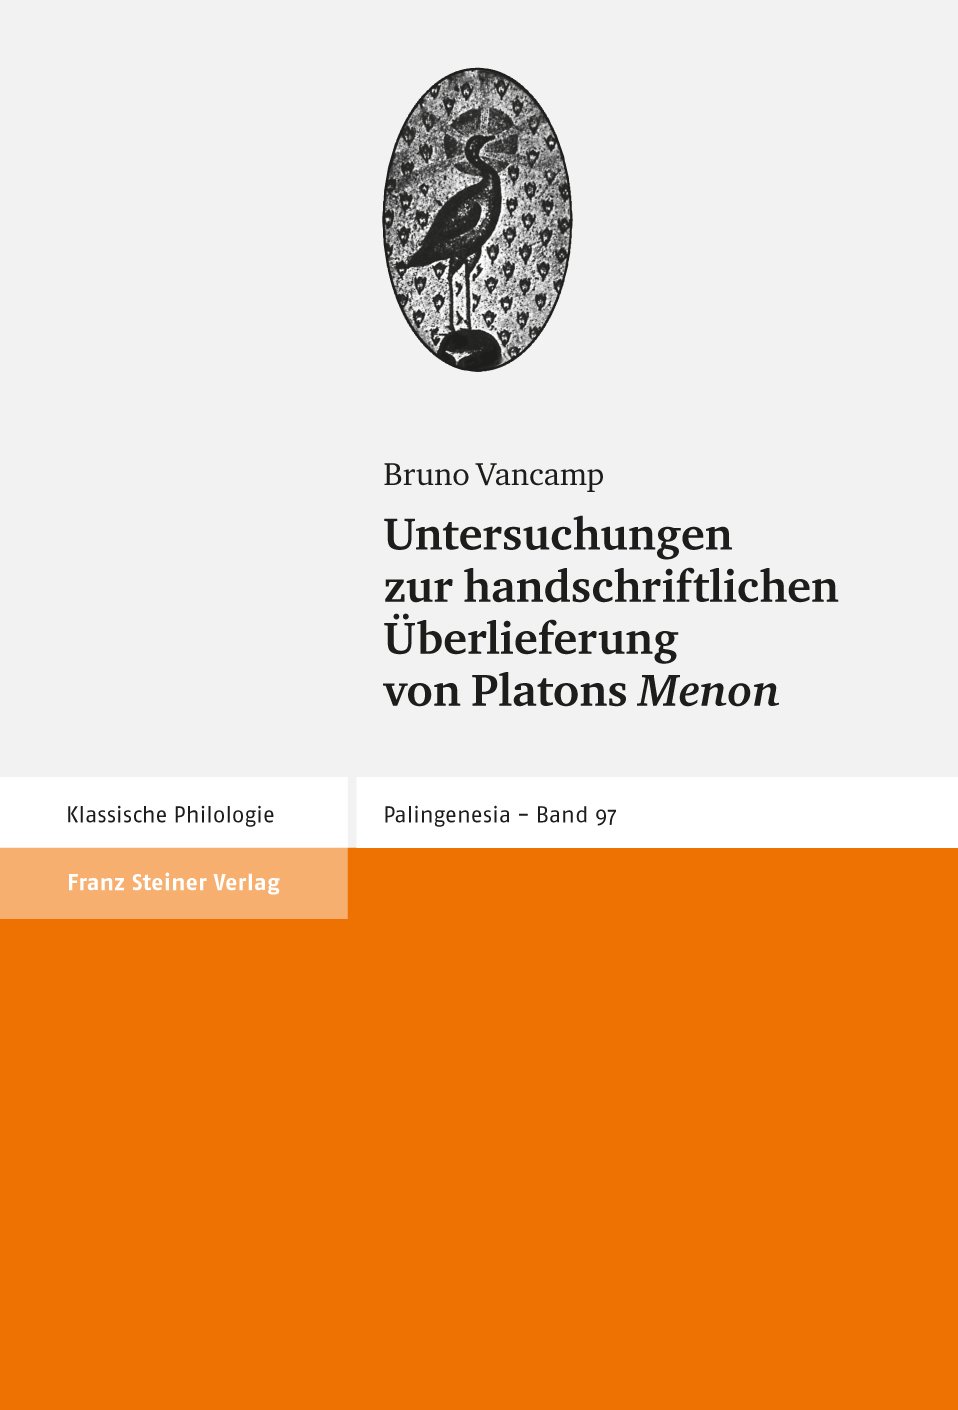 Untersuchungen zur handschriftlichen Überlieferung von Platons "Menon"